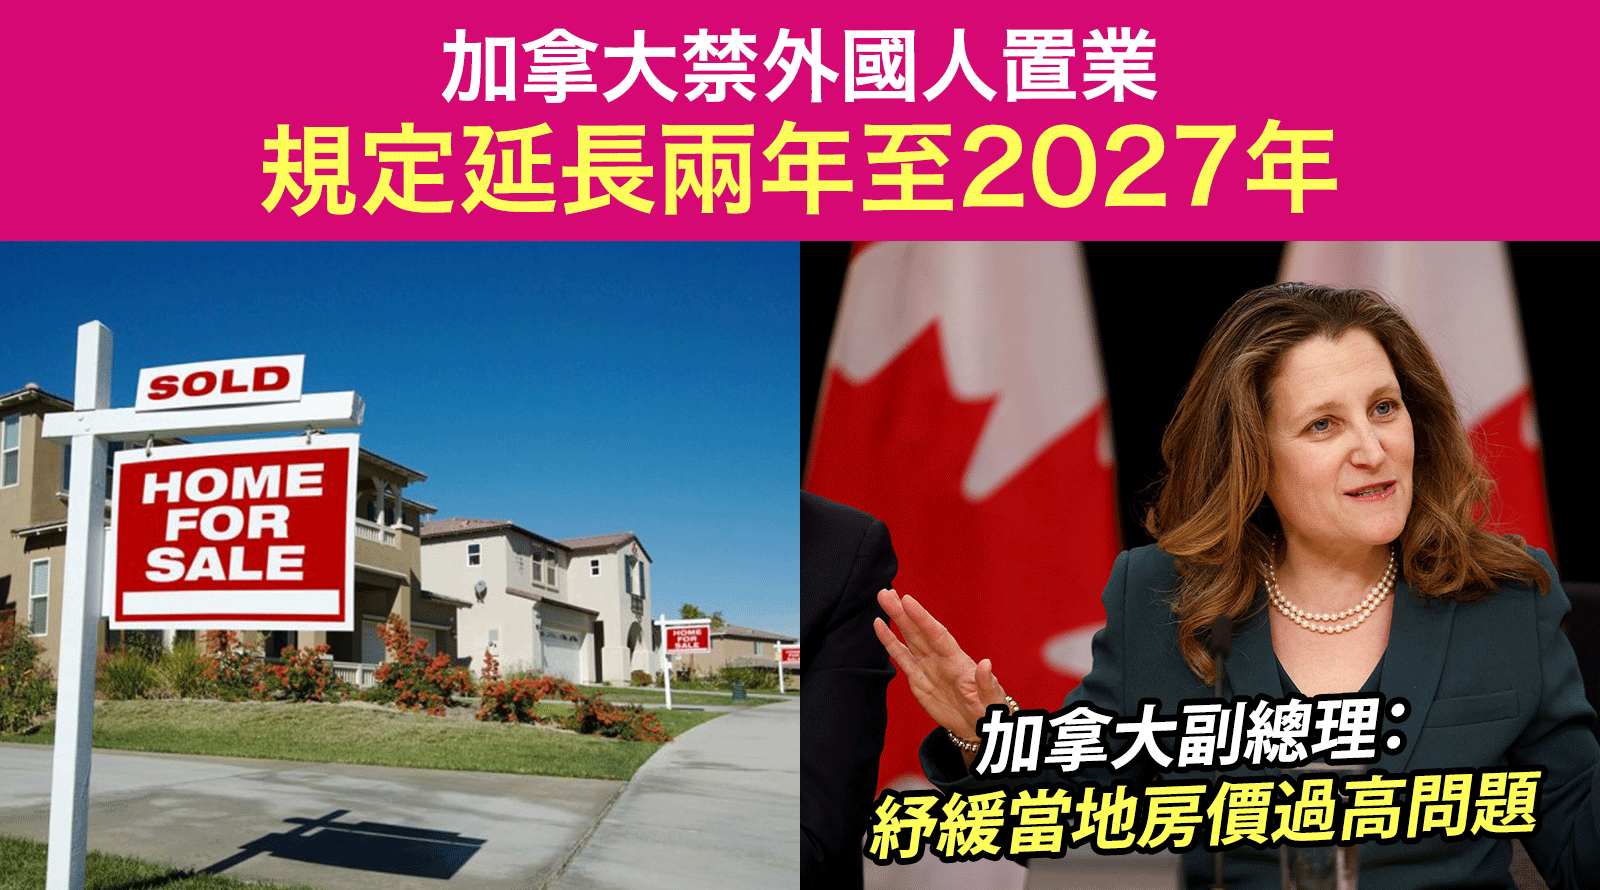 加拿大禁外國人置業-規定延長兩年至2027年